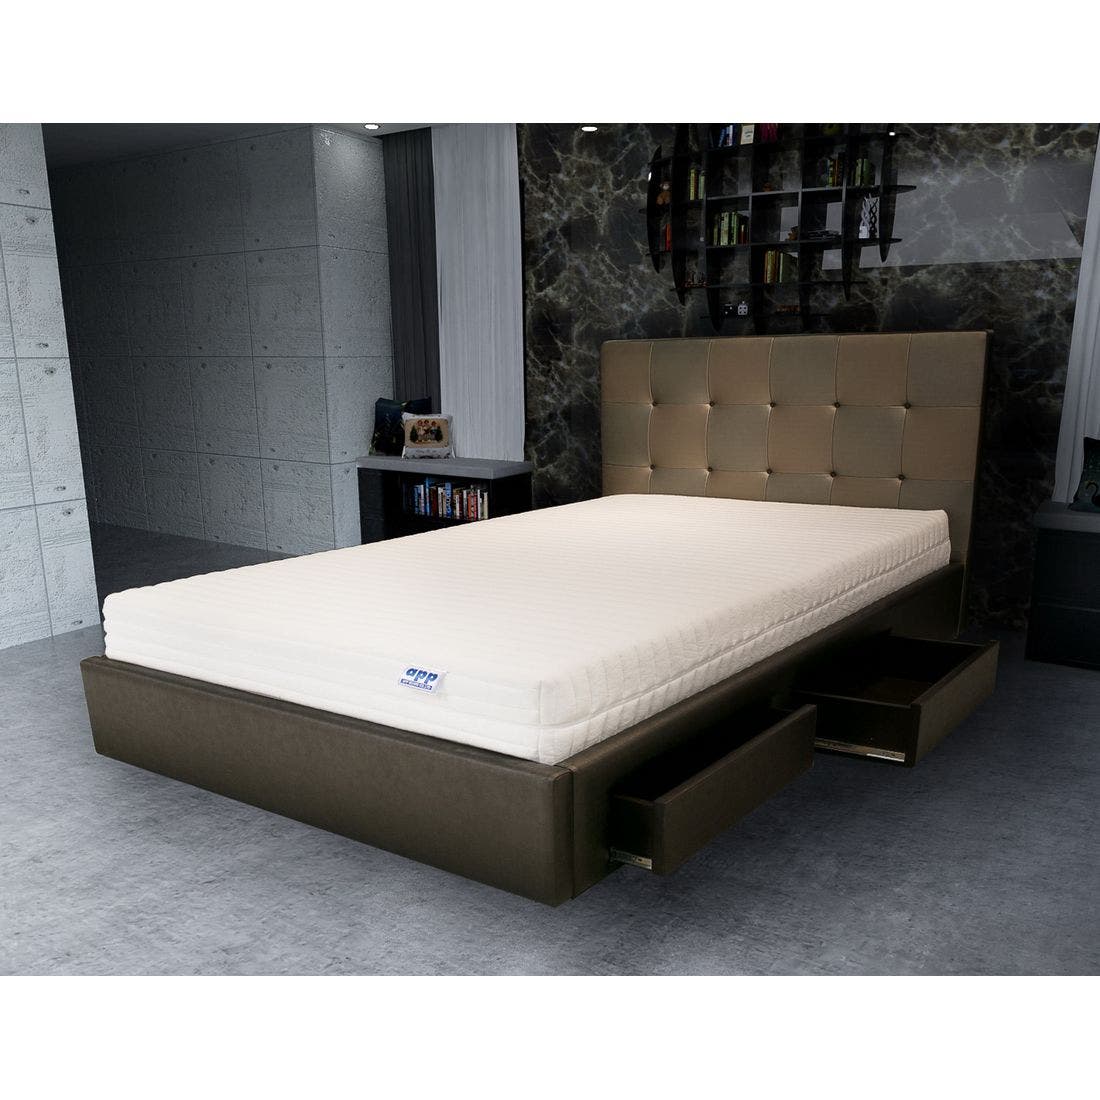 39001667-mattress-bedding-mattresses-latex-mattresses-31